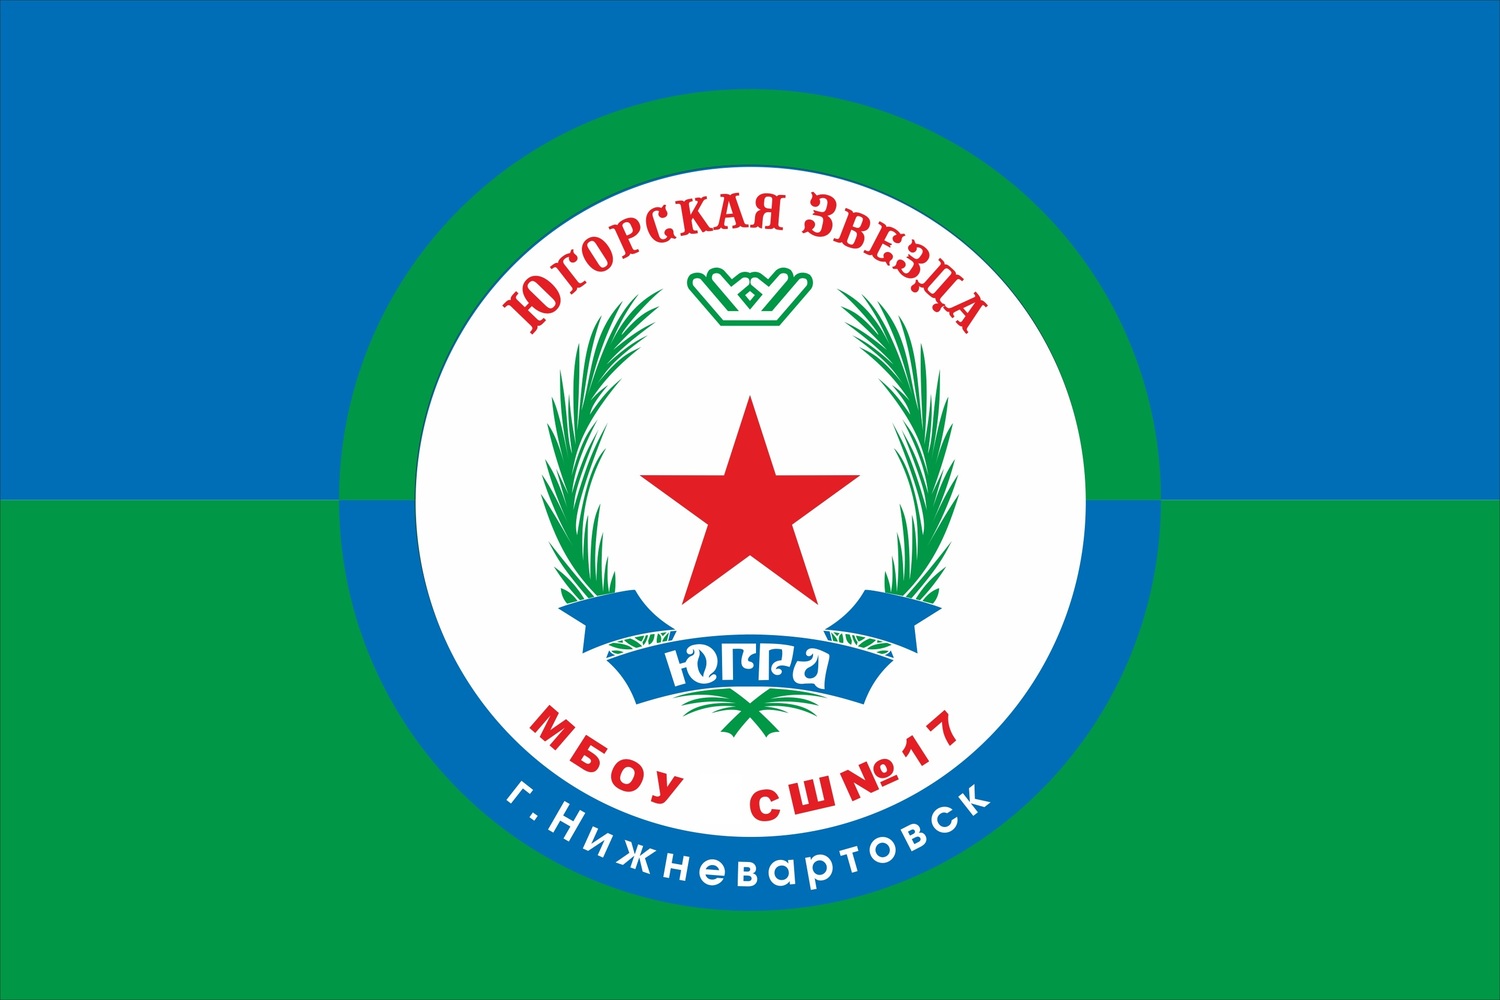 Поисковый отряд "Югорская звезда" (создан в 2008 г.)